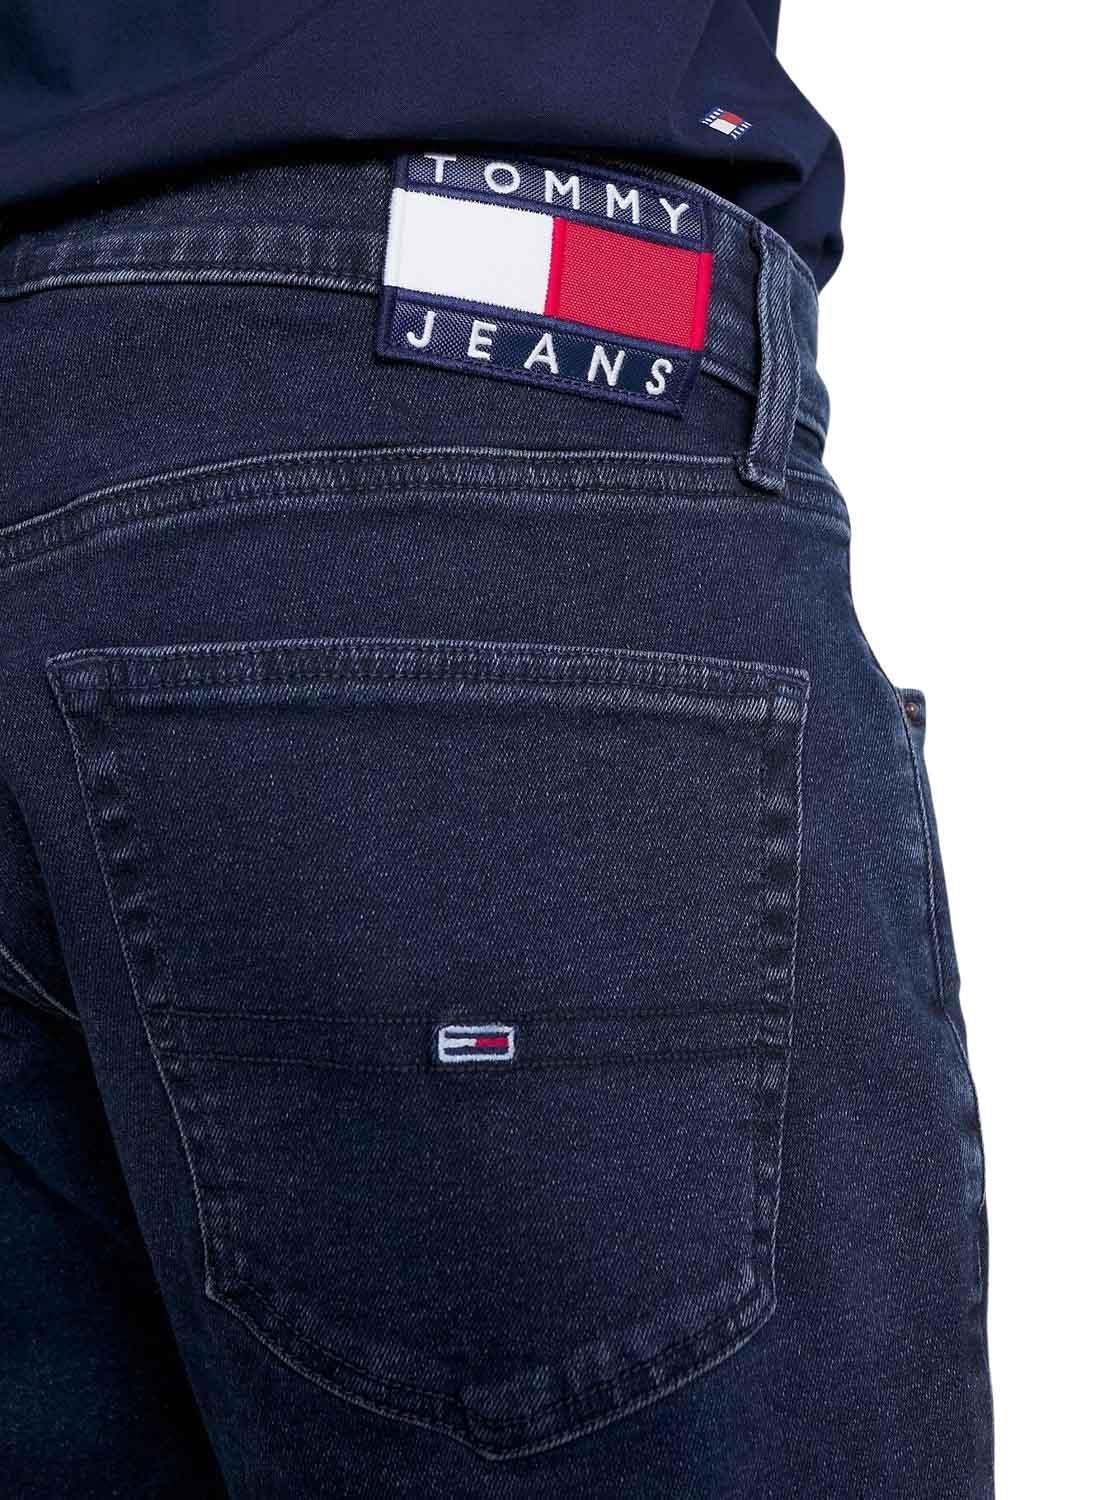 Pantaloni Jeans Tommy Jeans Scanton Blu Navy Uomo